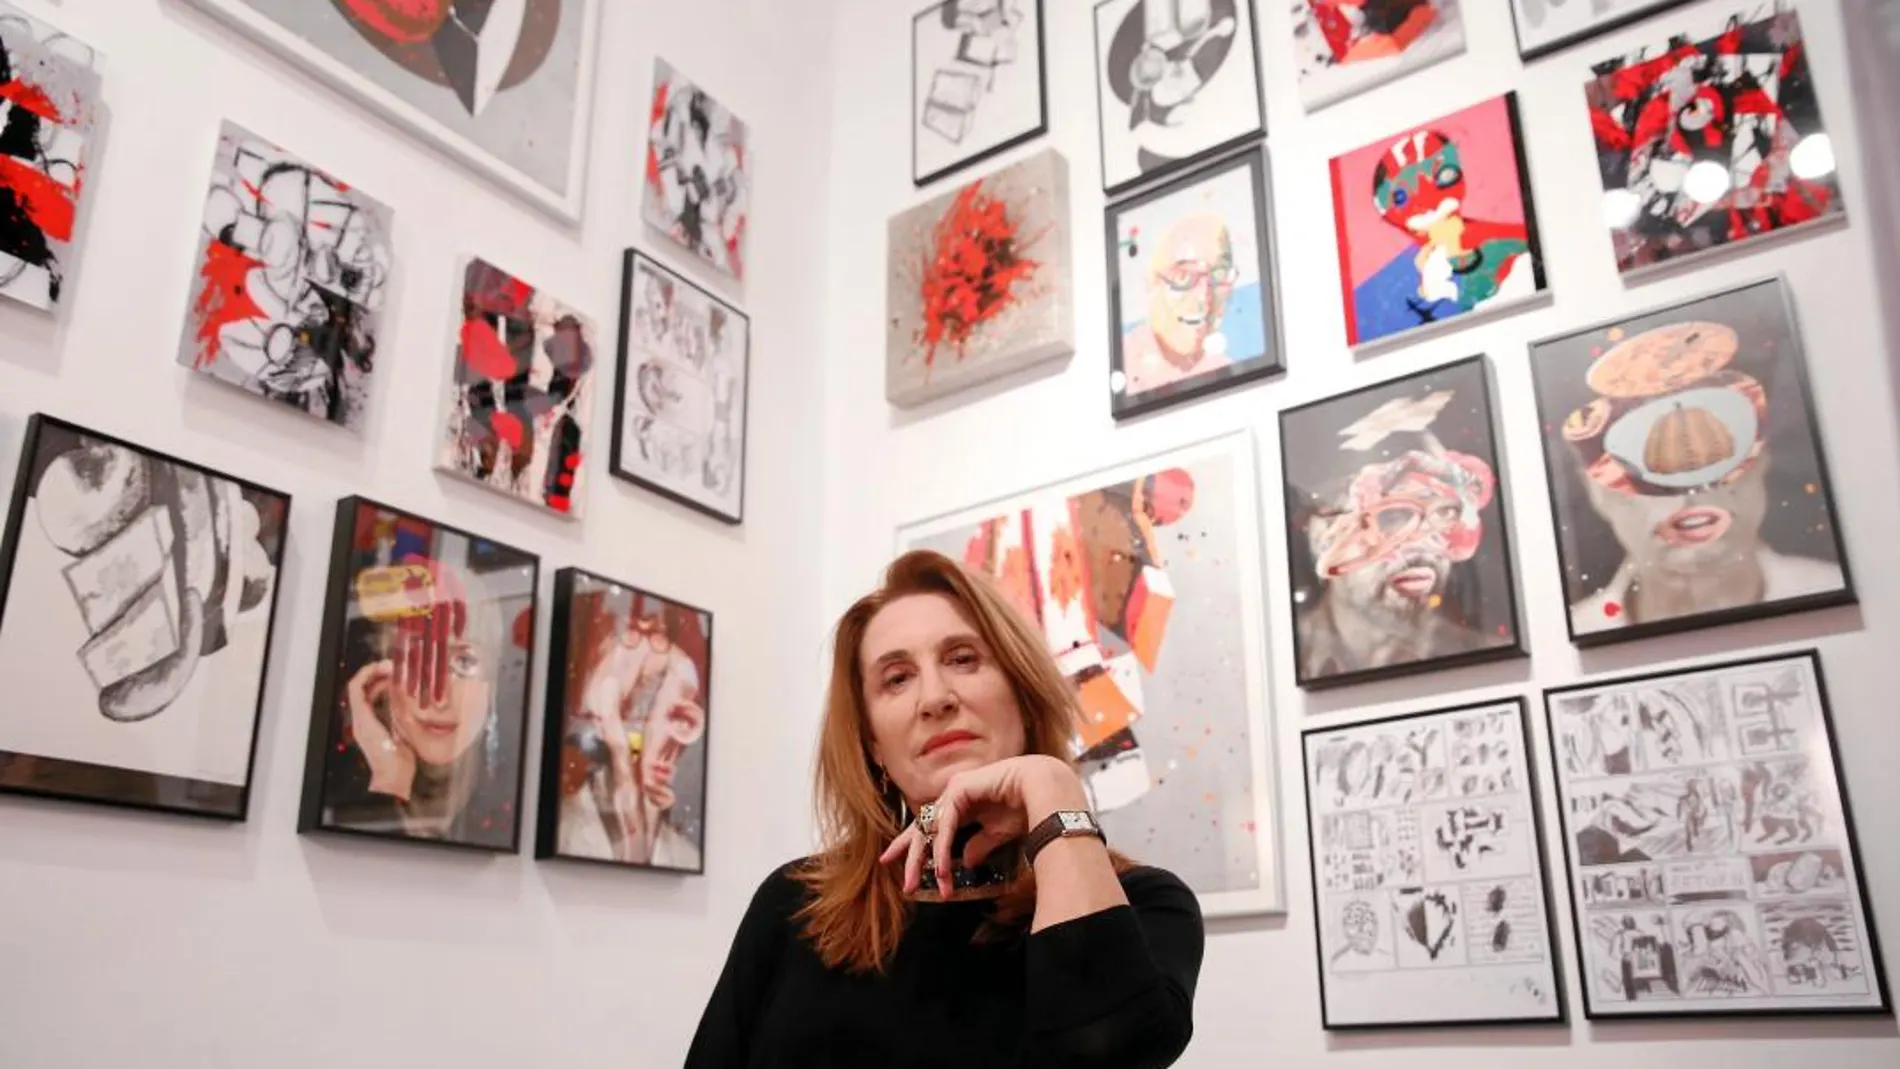 La galerista Blanca Soto, con treinta años de profesión, asegura que nunca ha tenido problemas por ser mujer